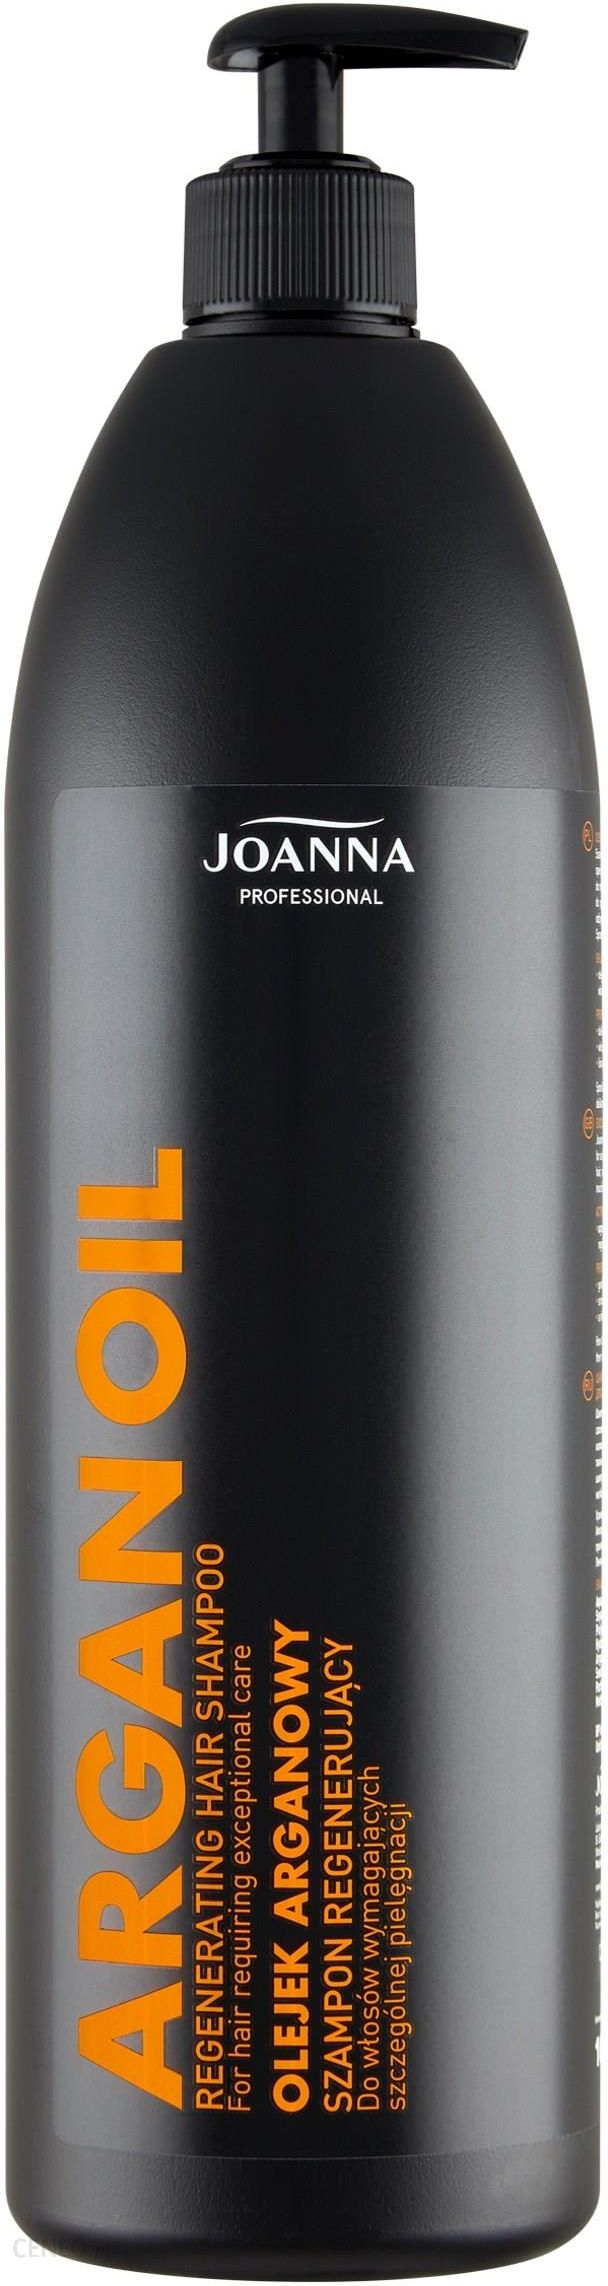 joanna professional pielęgnacja szampon z olejkiem arganowym 1l